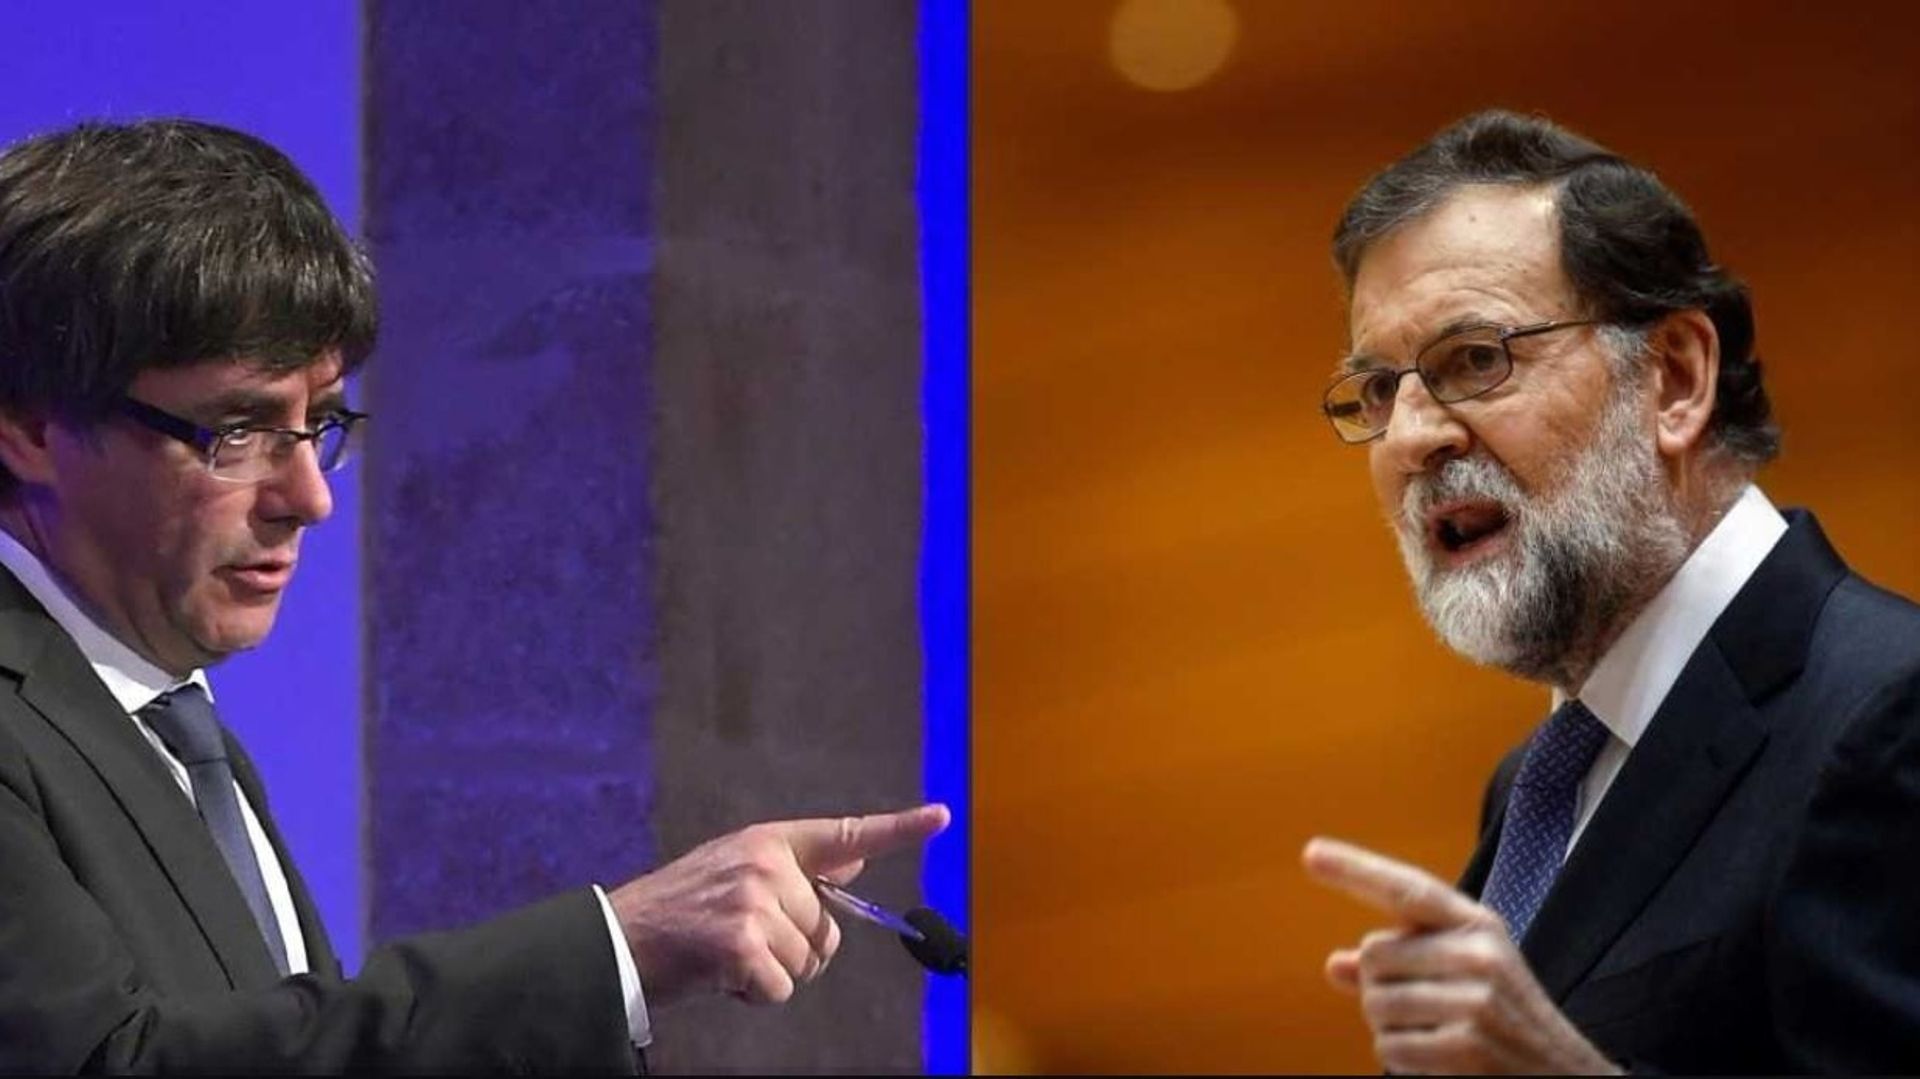 Mariano Rajoy annonce des élections régionales le 21 décembre